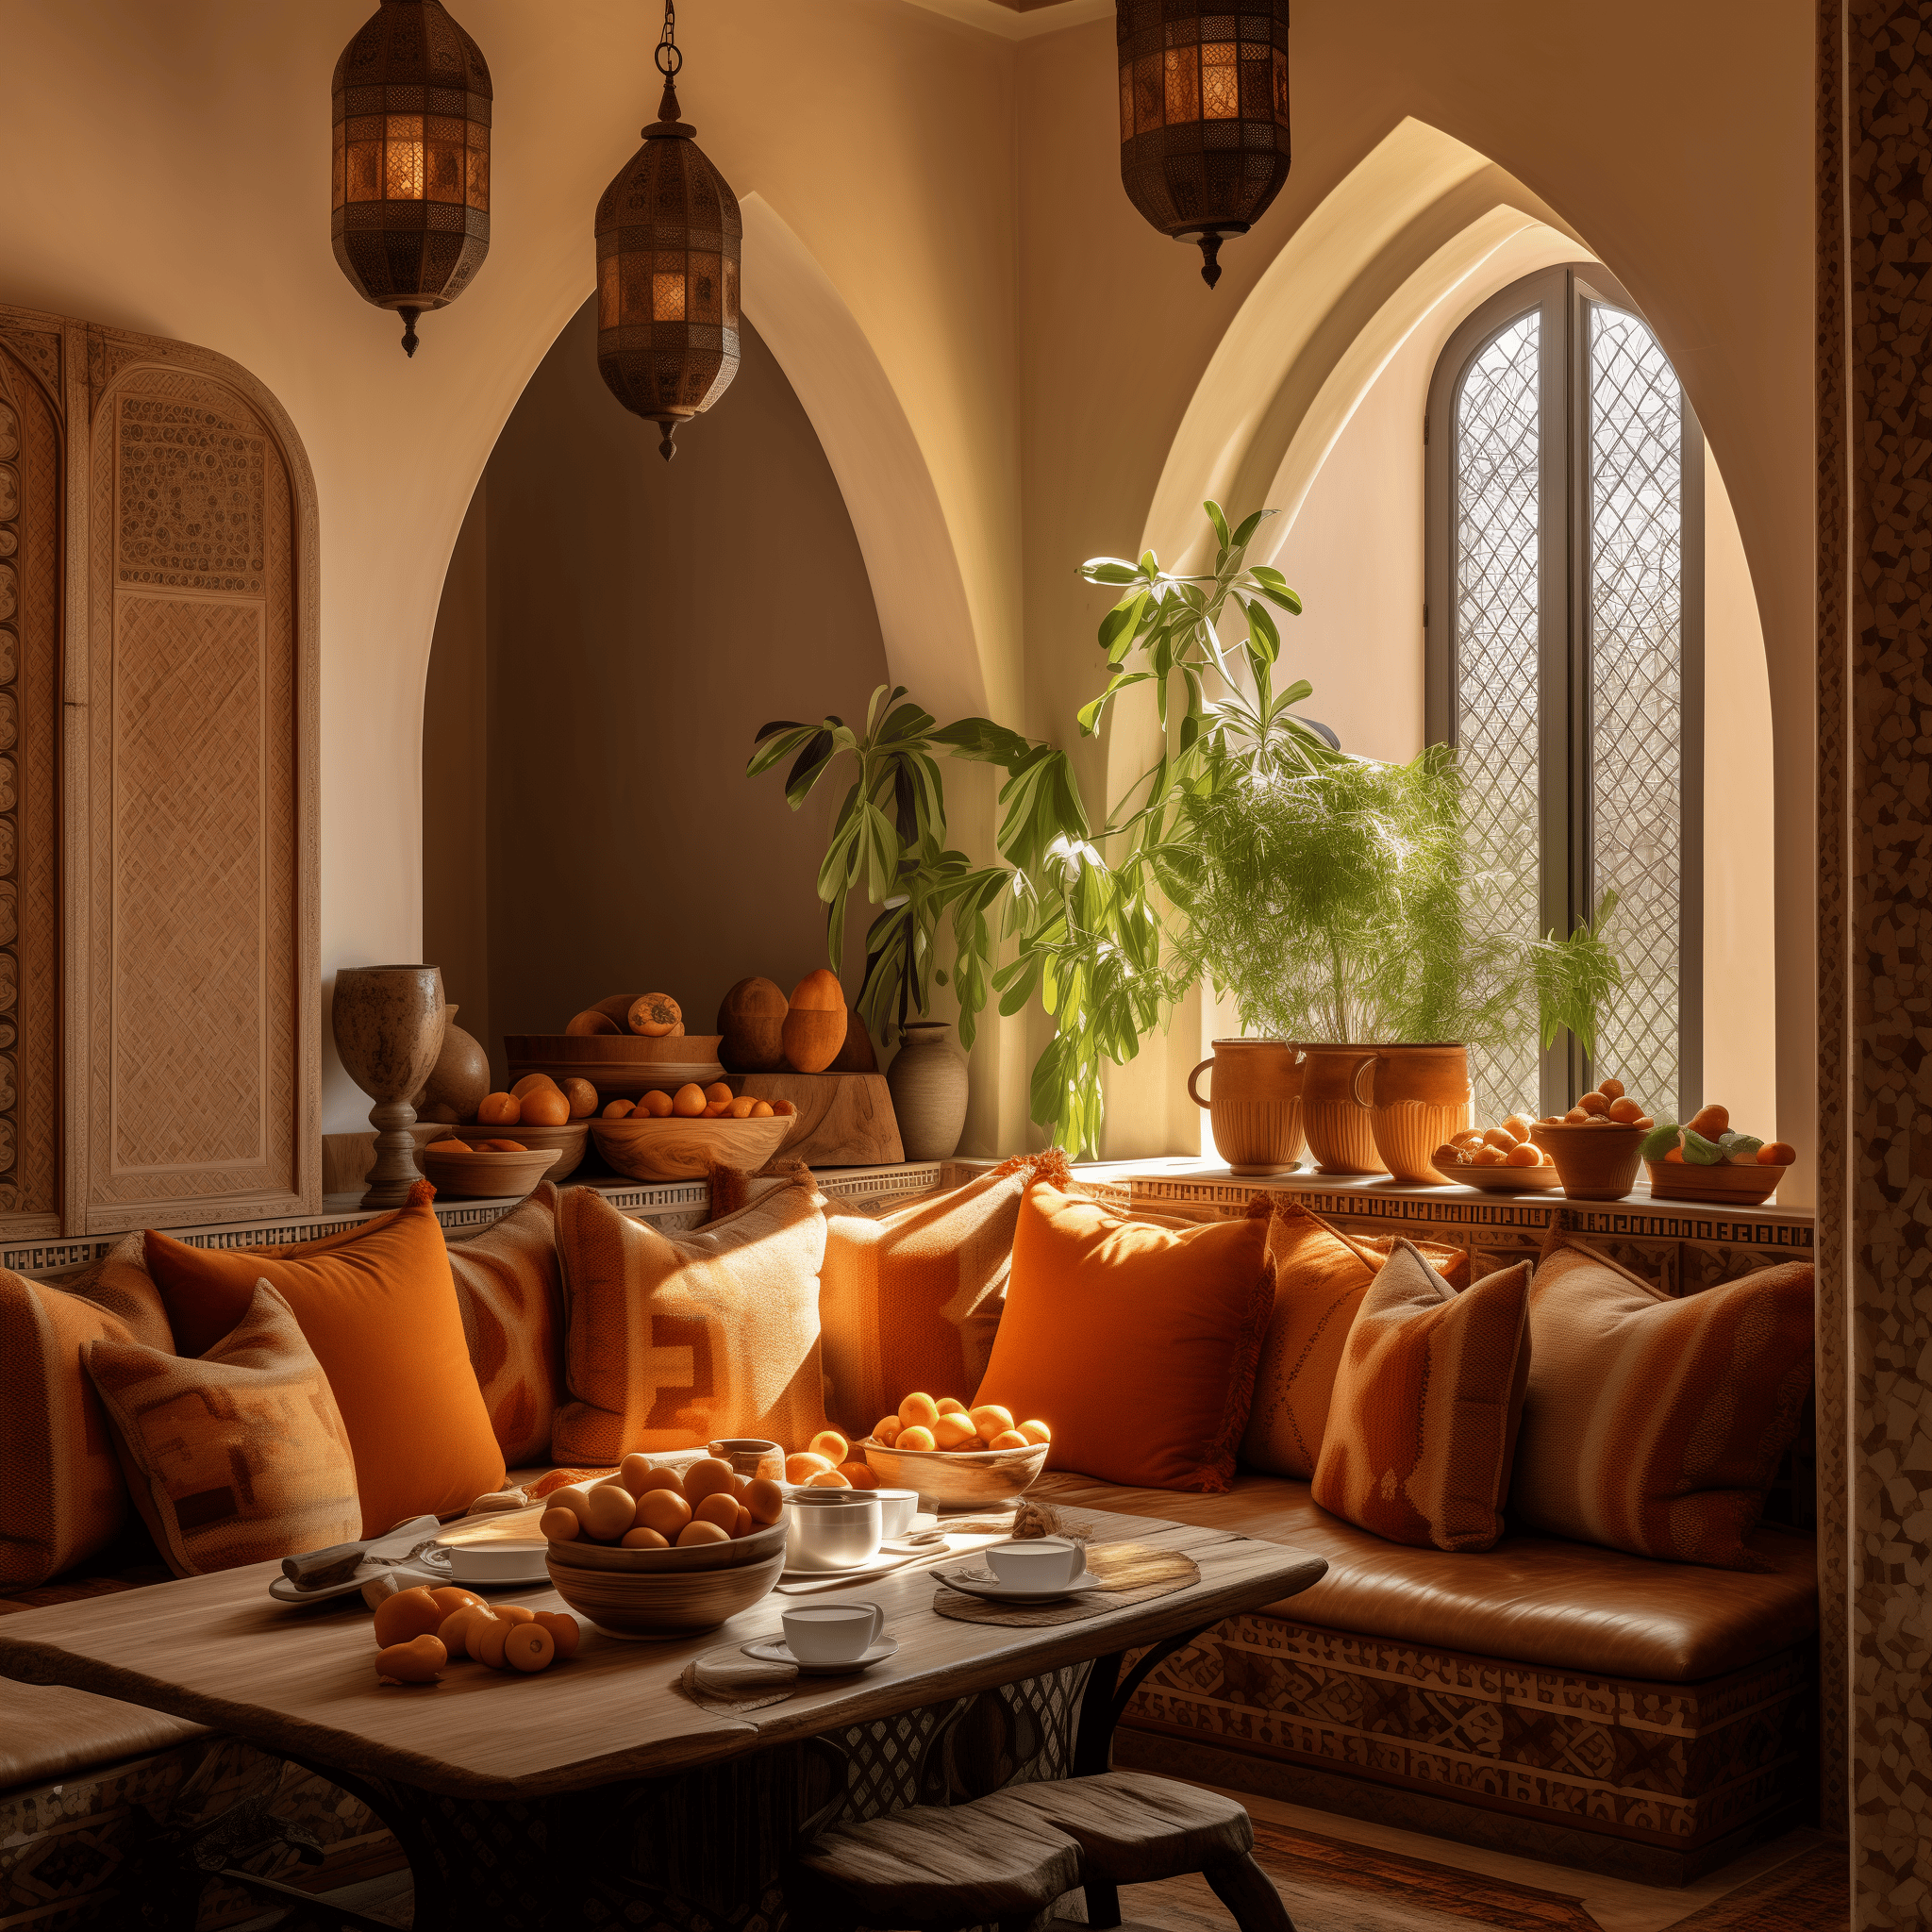 moroccan kitchen decor ideas modern interior design style theme architecture